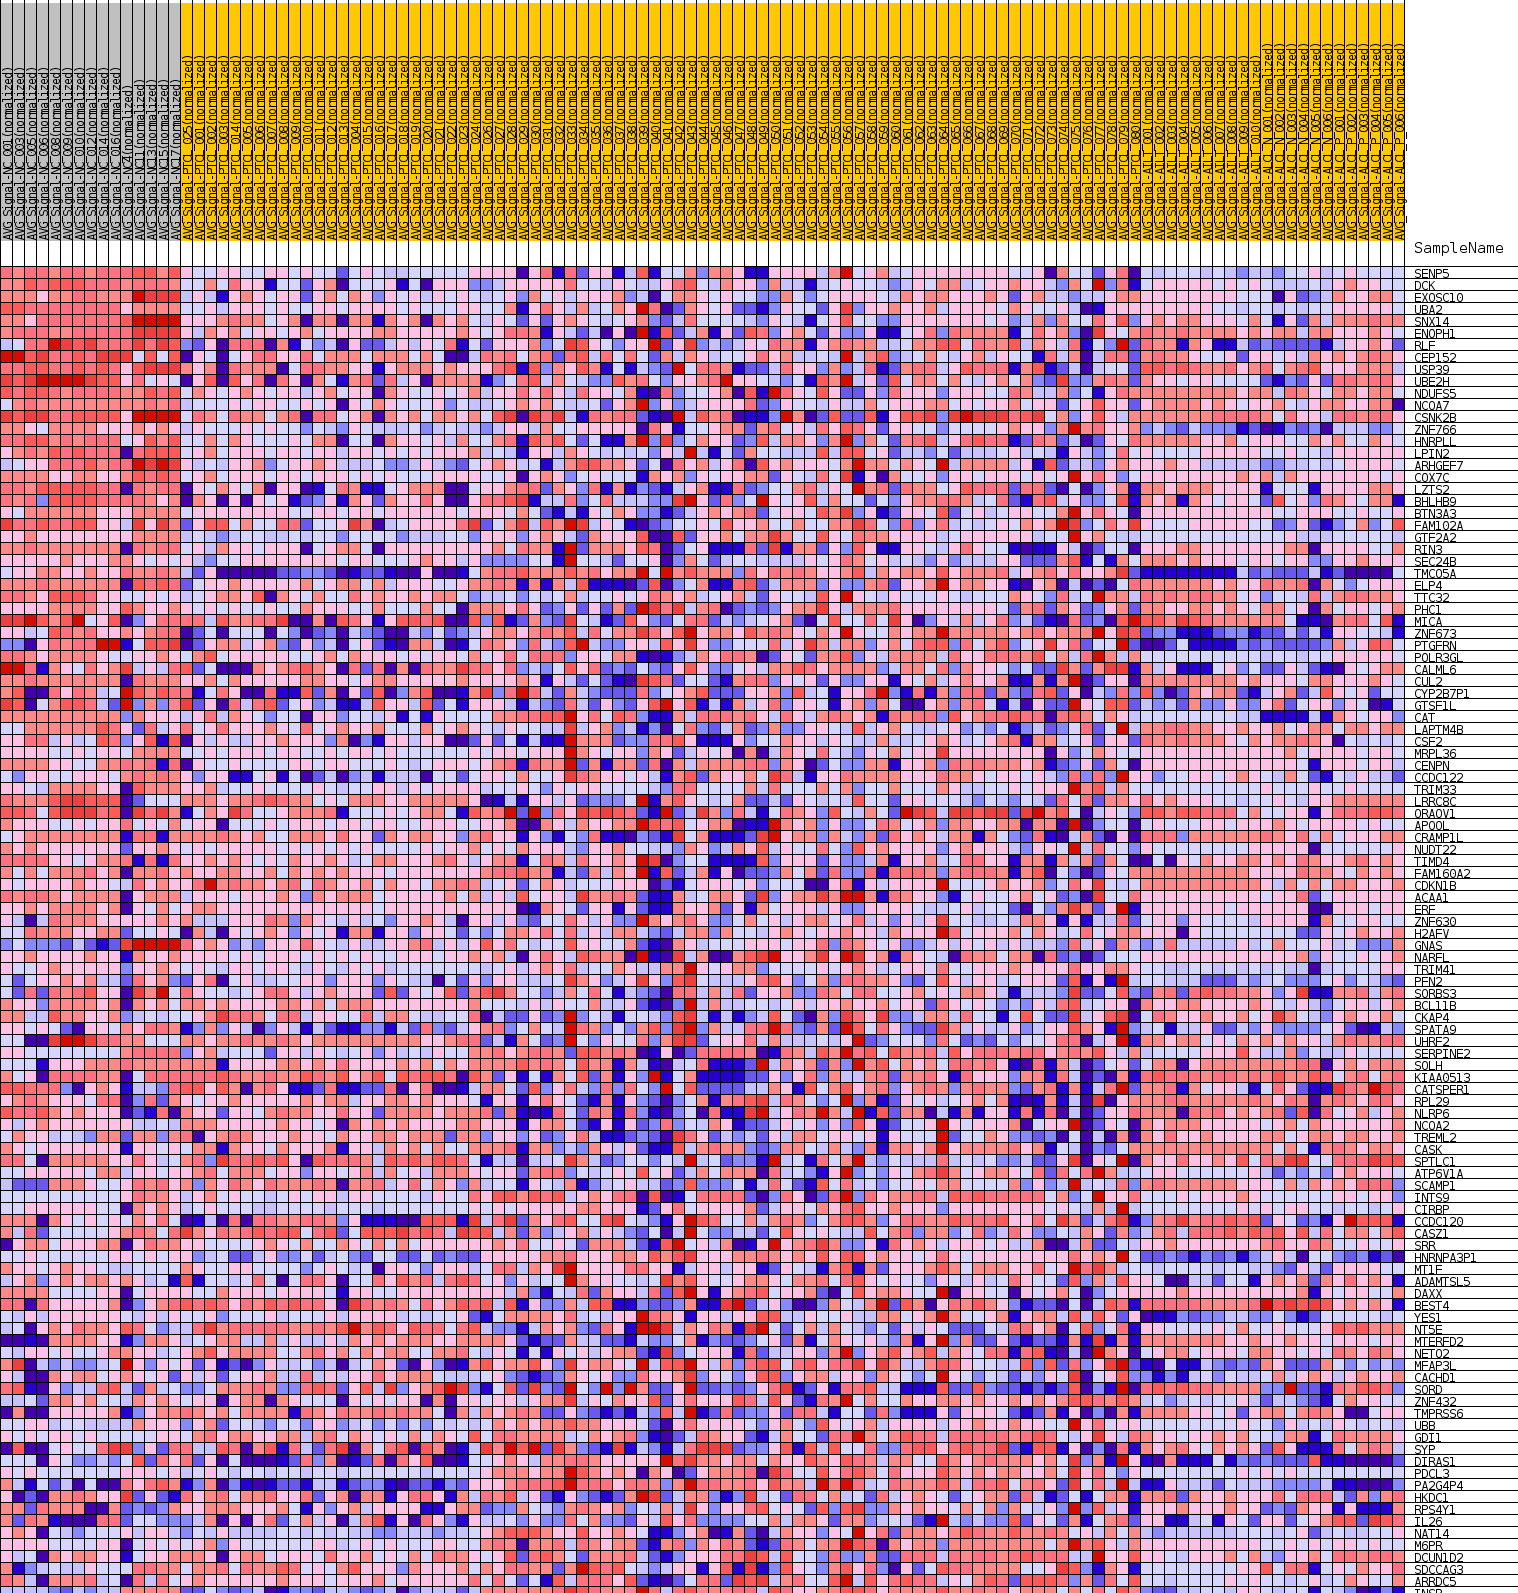 Figura 9: Il clustering del profilo di espressione genica dei 468 geni differenzialmente espressi tra